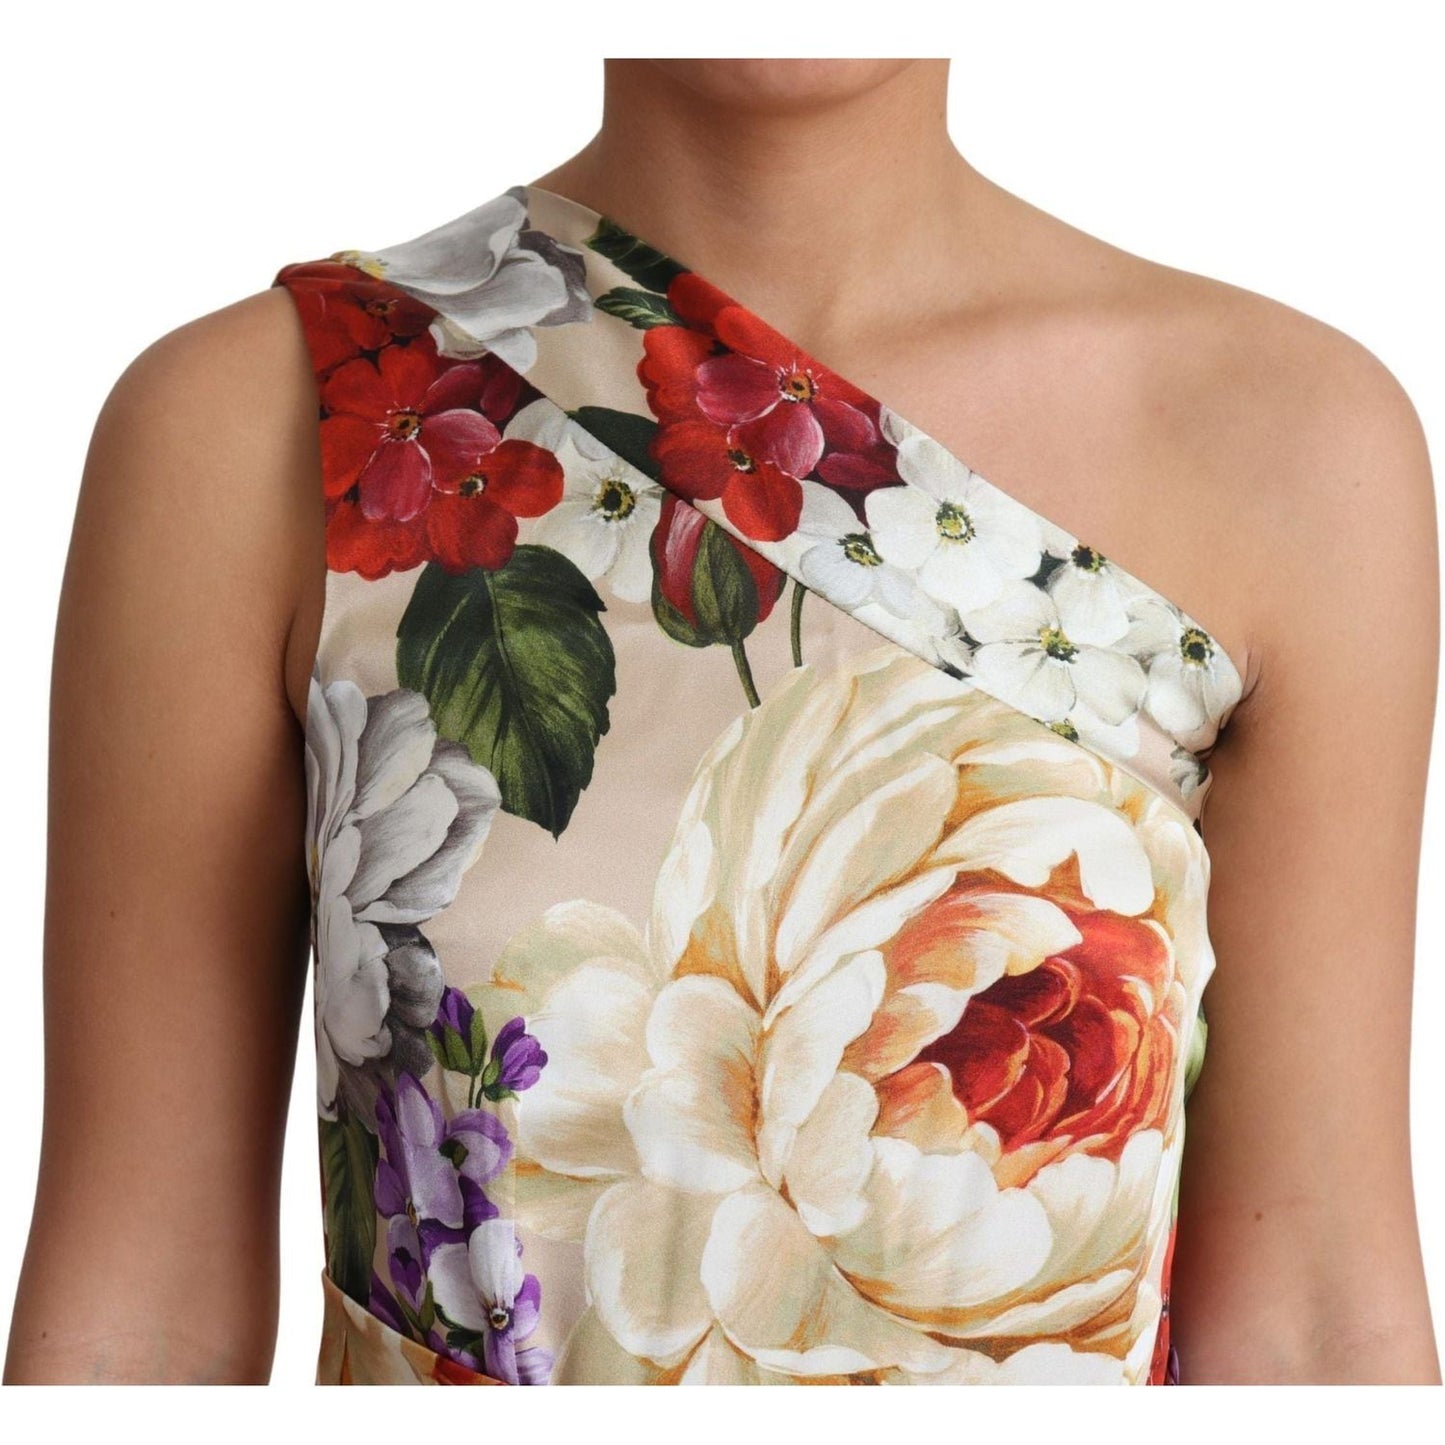 Dolce & GabbanaElegant One-Shoulder Floral Silk Maxi DressMcRichard Designer Brands£1209.00